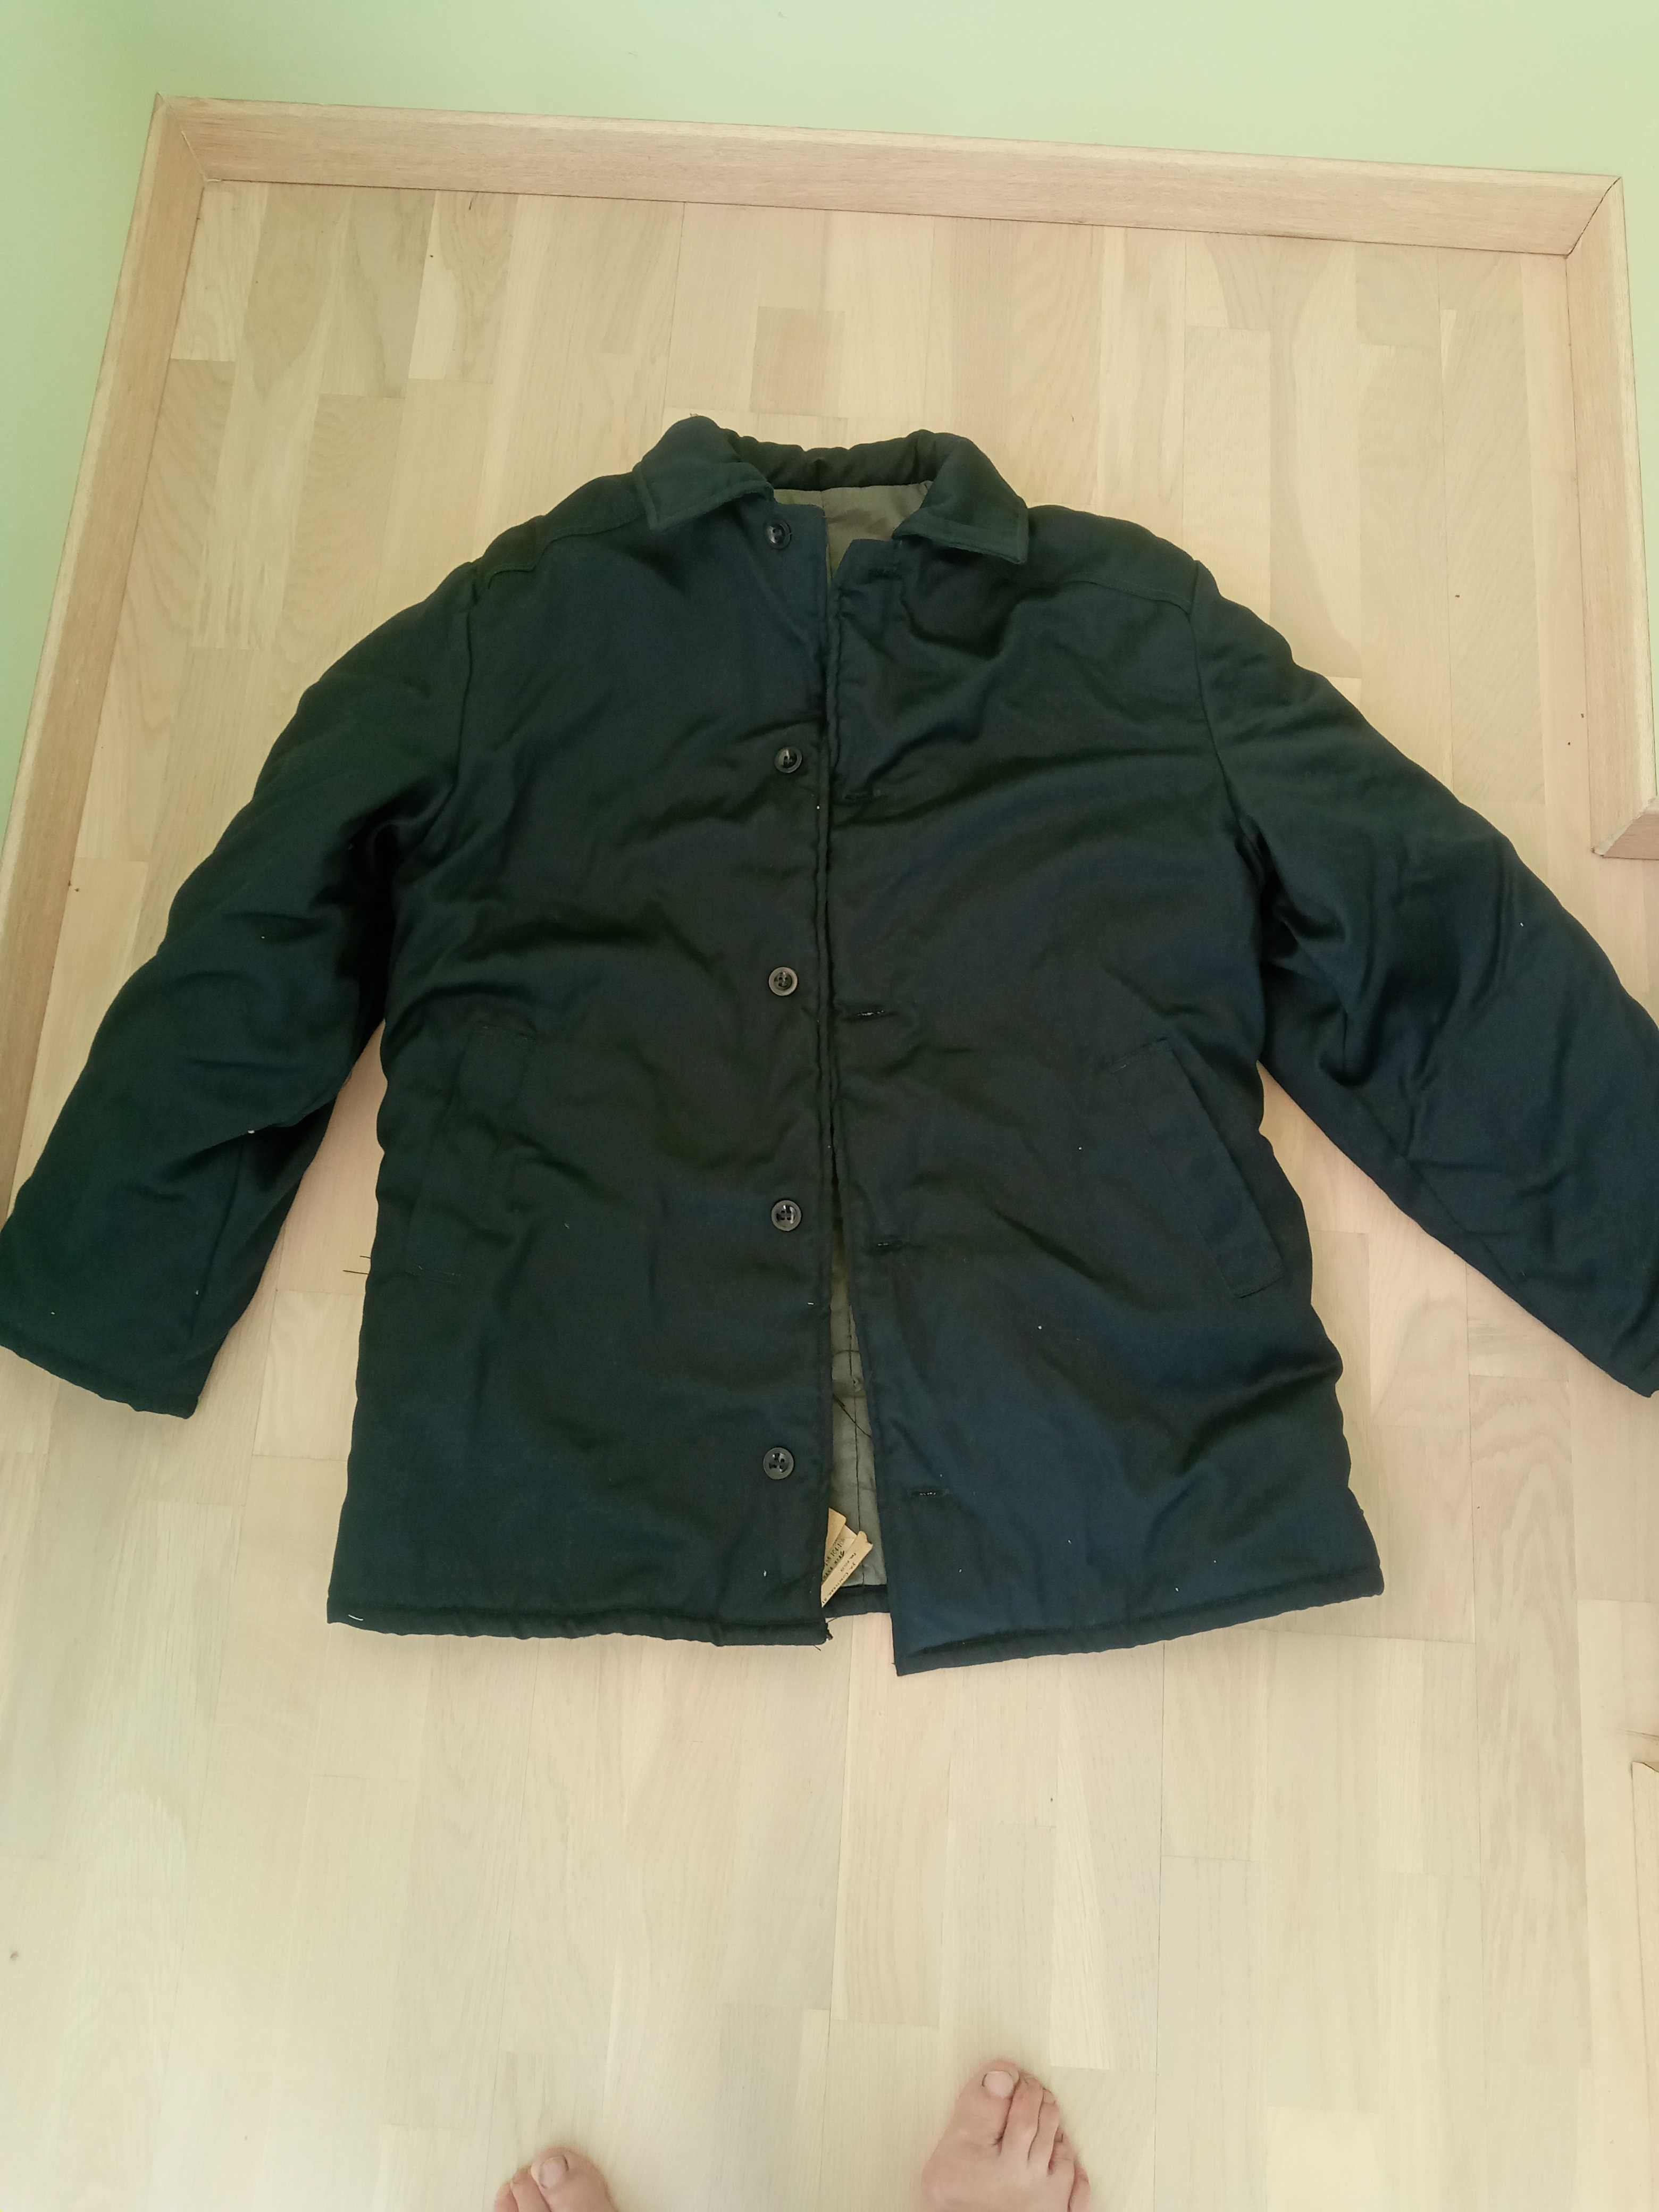 Куртка мужская рабочая, ватник, фуфайка  80-90 годы